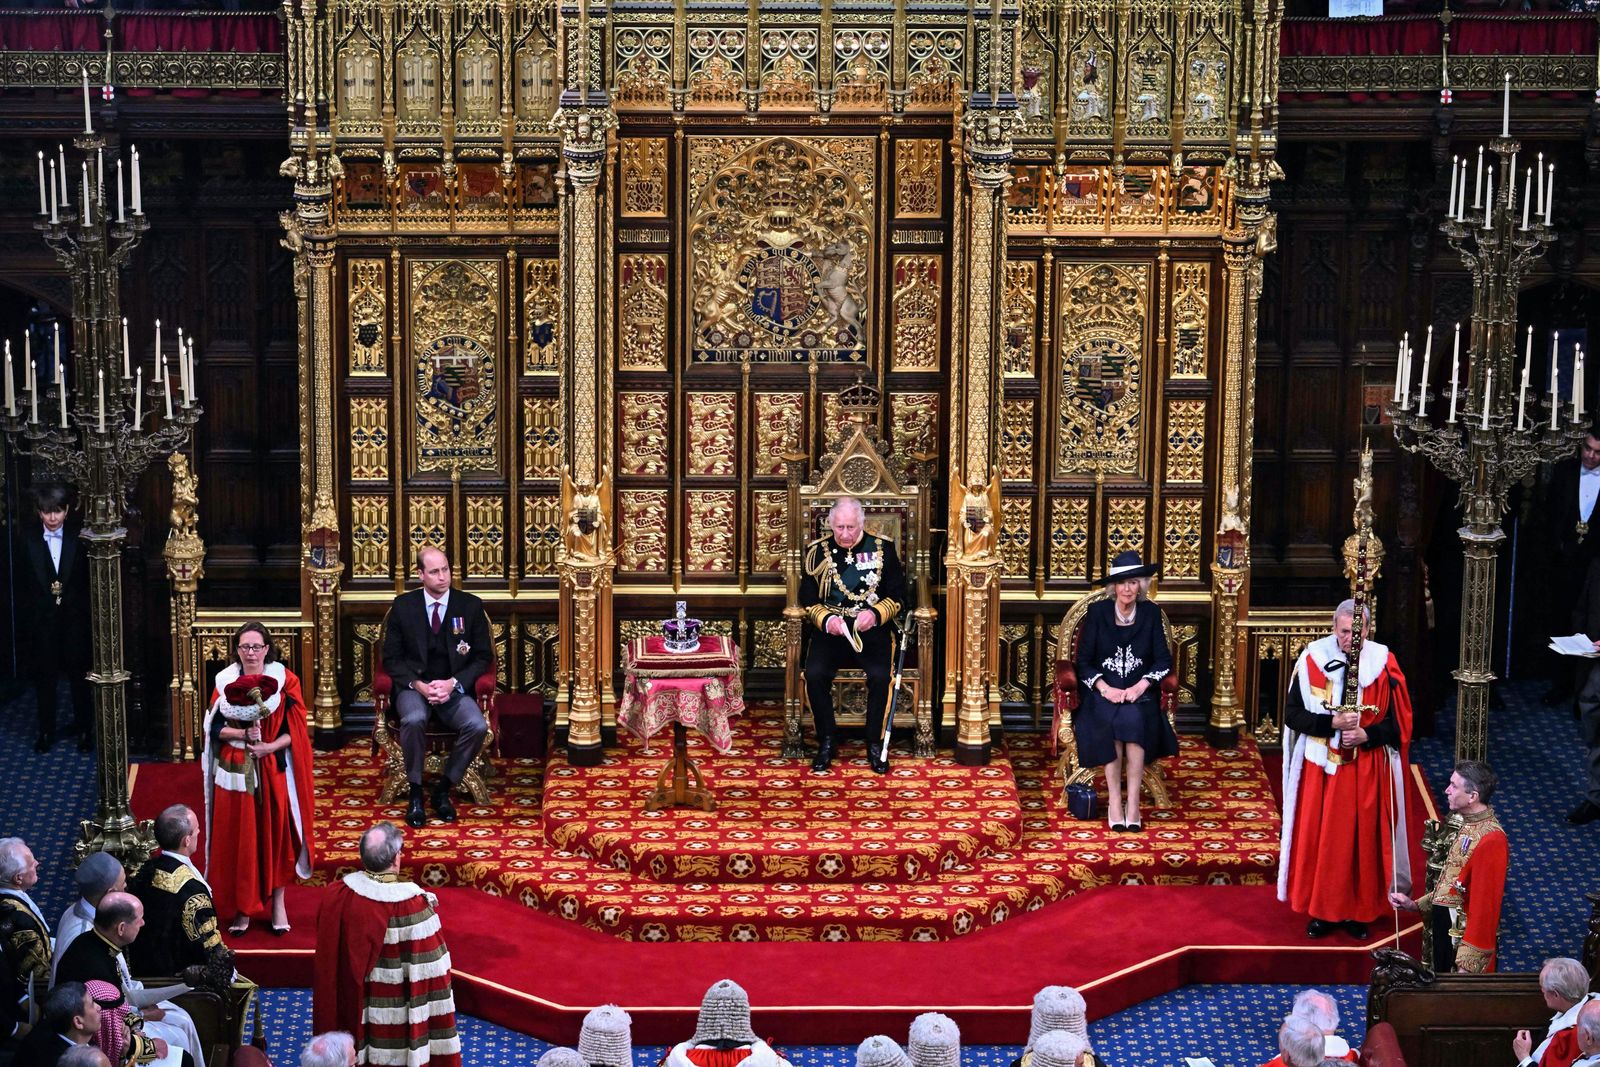 الأمير تشارلز، ولي عهد بريطانيا وأمير ويلز يلقي خطاب الملكة في الجلسة الافتتاحية للبرلمان البريطاني نيابة عن الملكة إليزابيث - 10 مايو 2022 - AFP